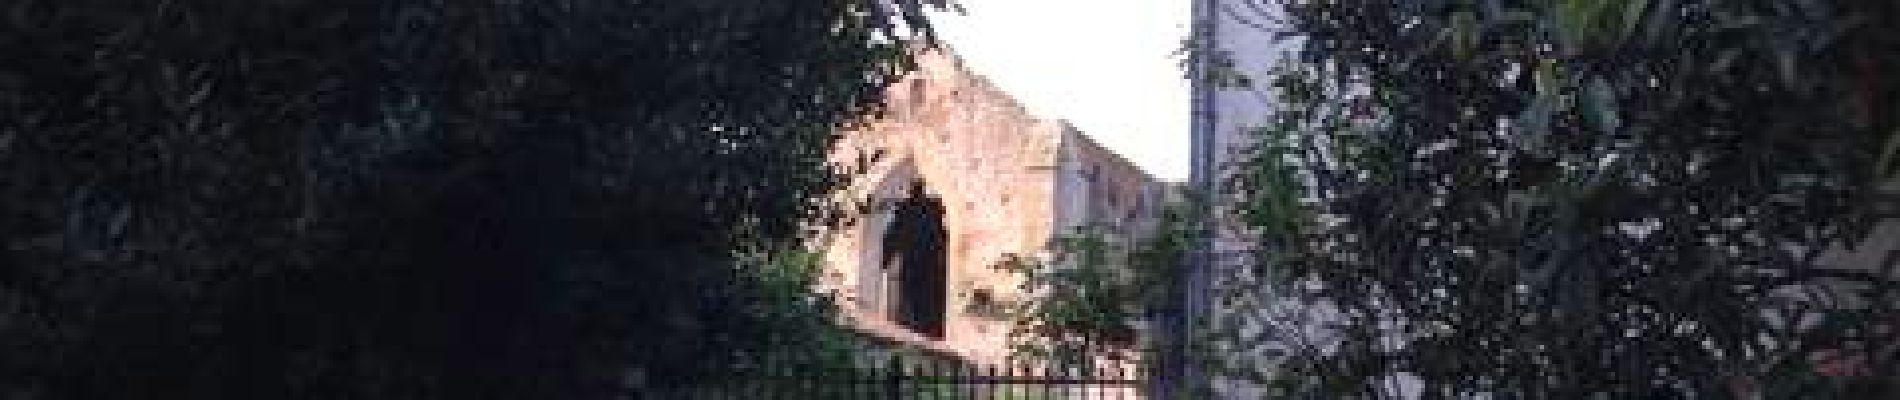 Point d'intérêt Saint-Martin-le-Vieil - Abbaye de Villelongue - Photo